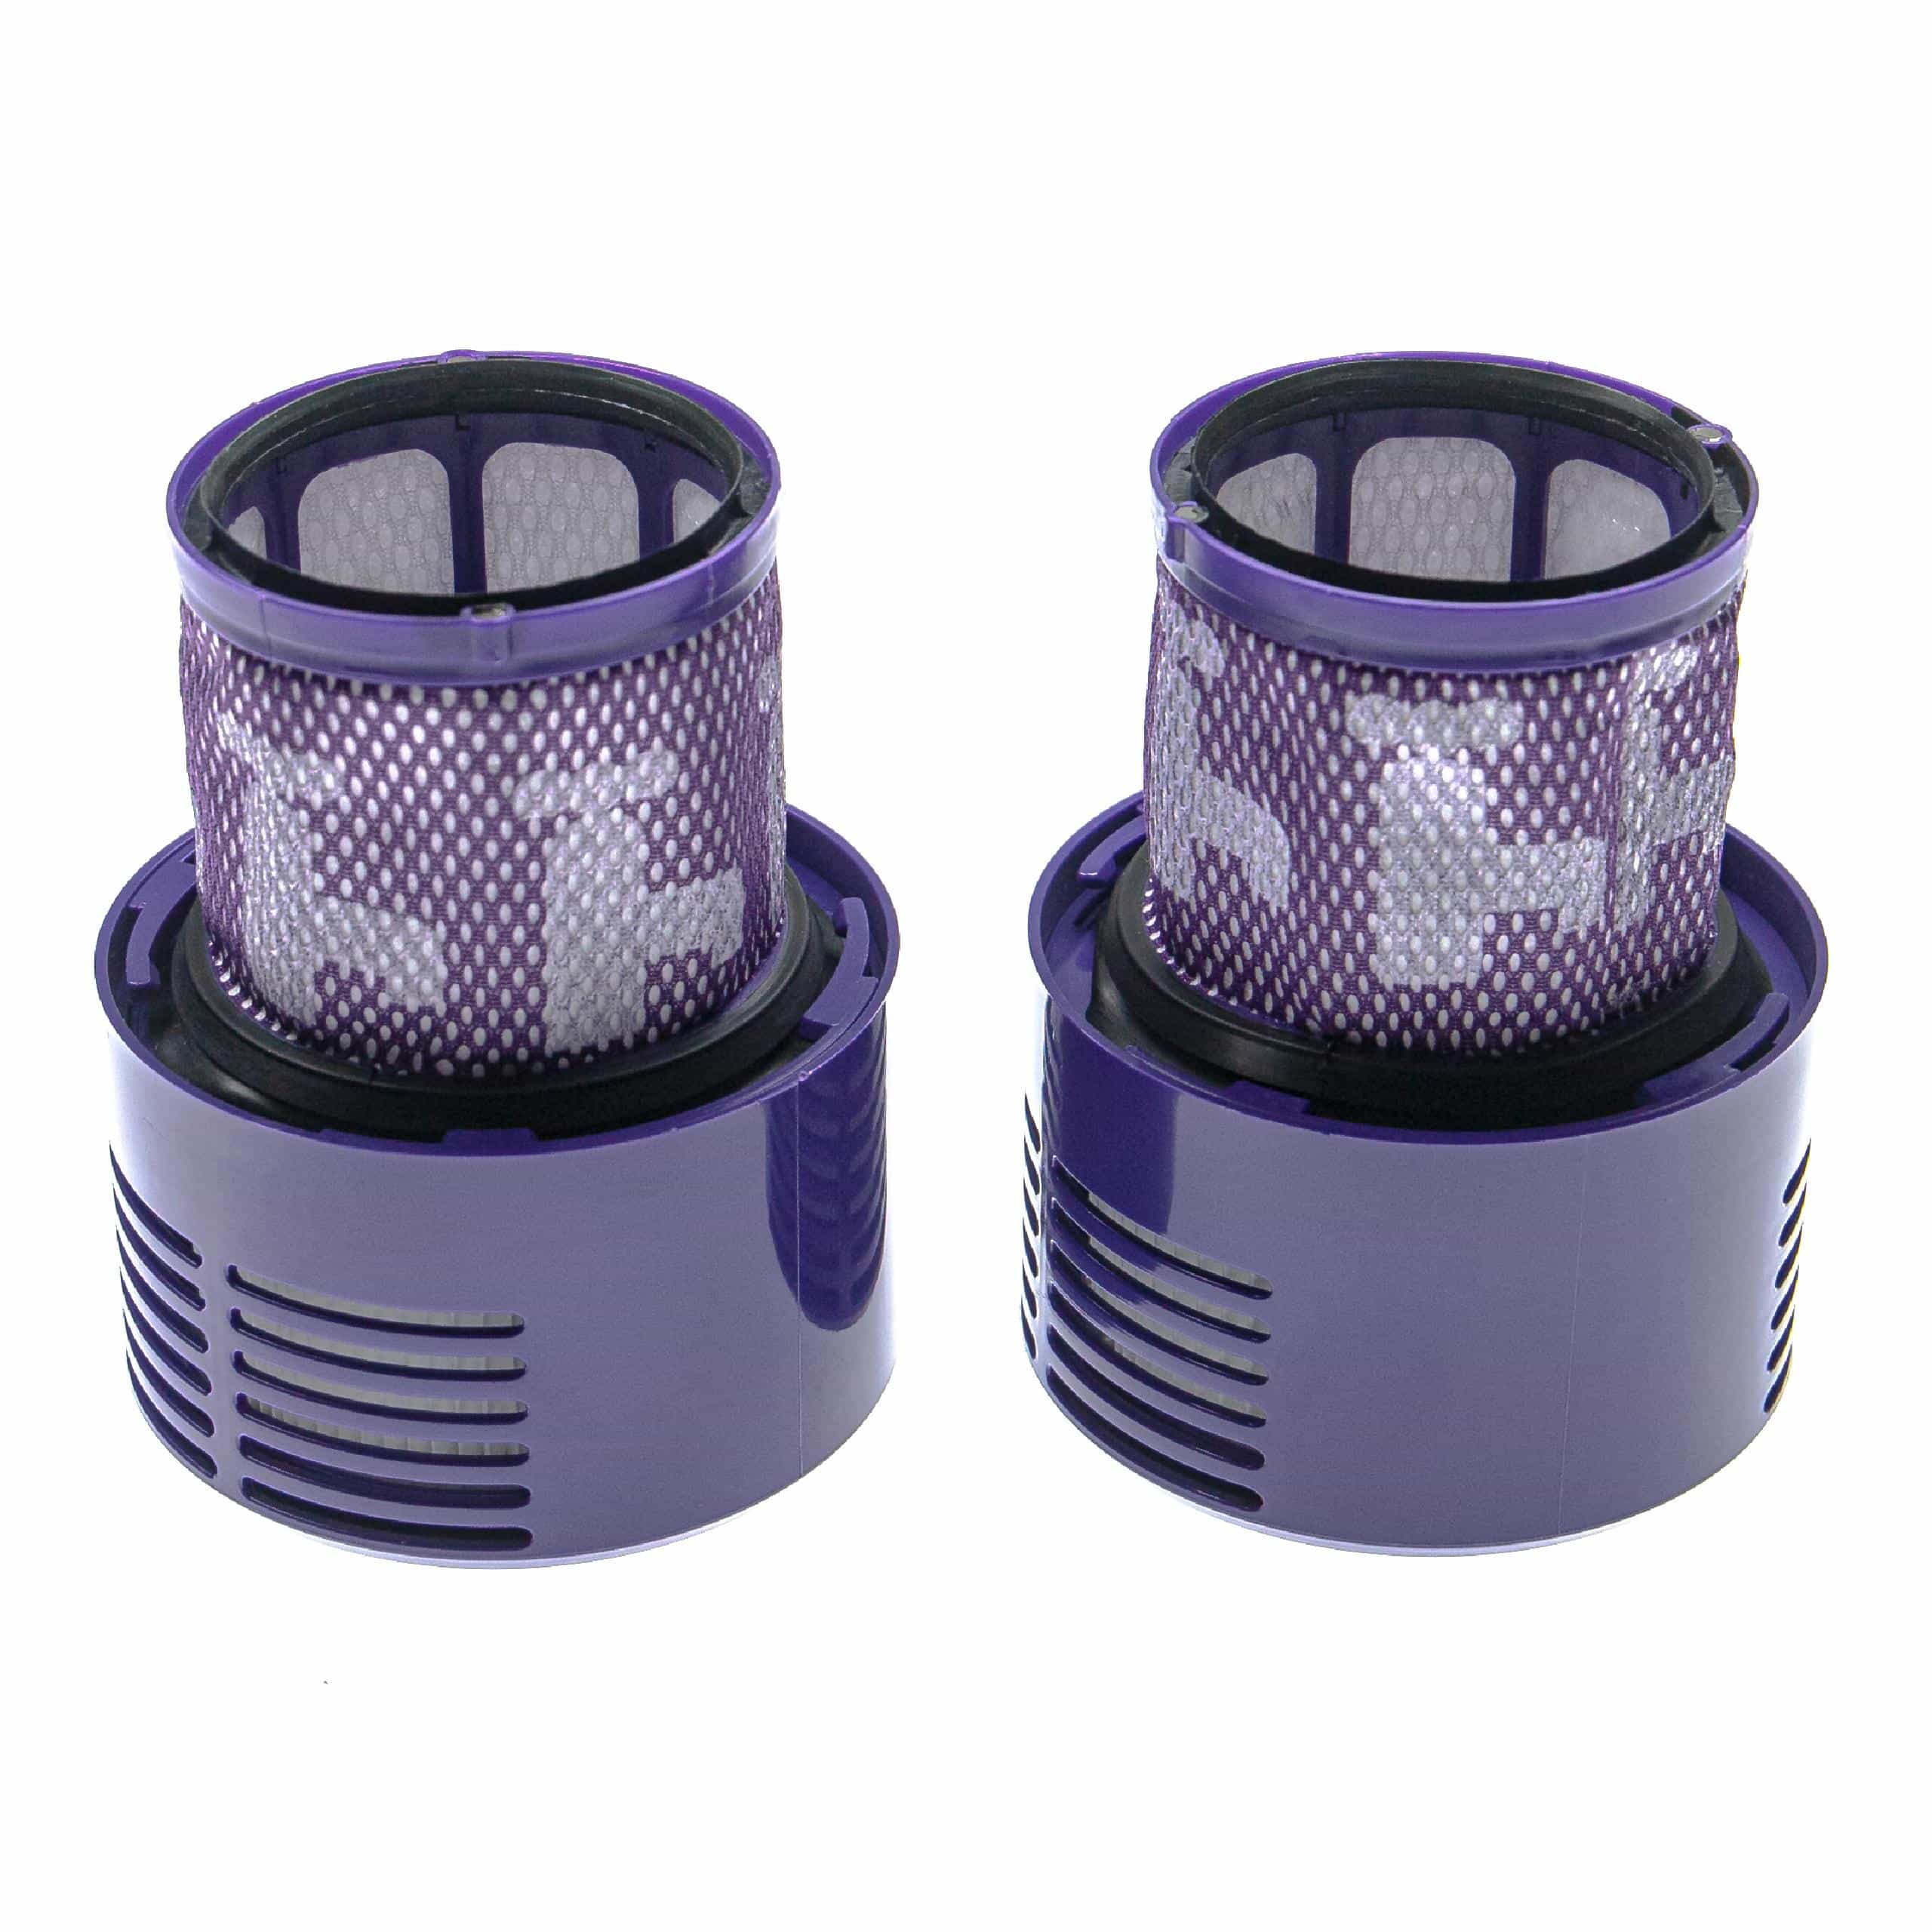 4x Filtro reemplaza Dyson 969082-01 para aspiradora - filtro Hepa lila